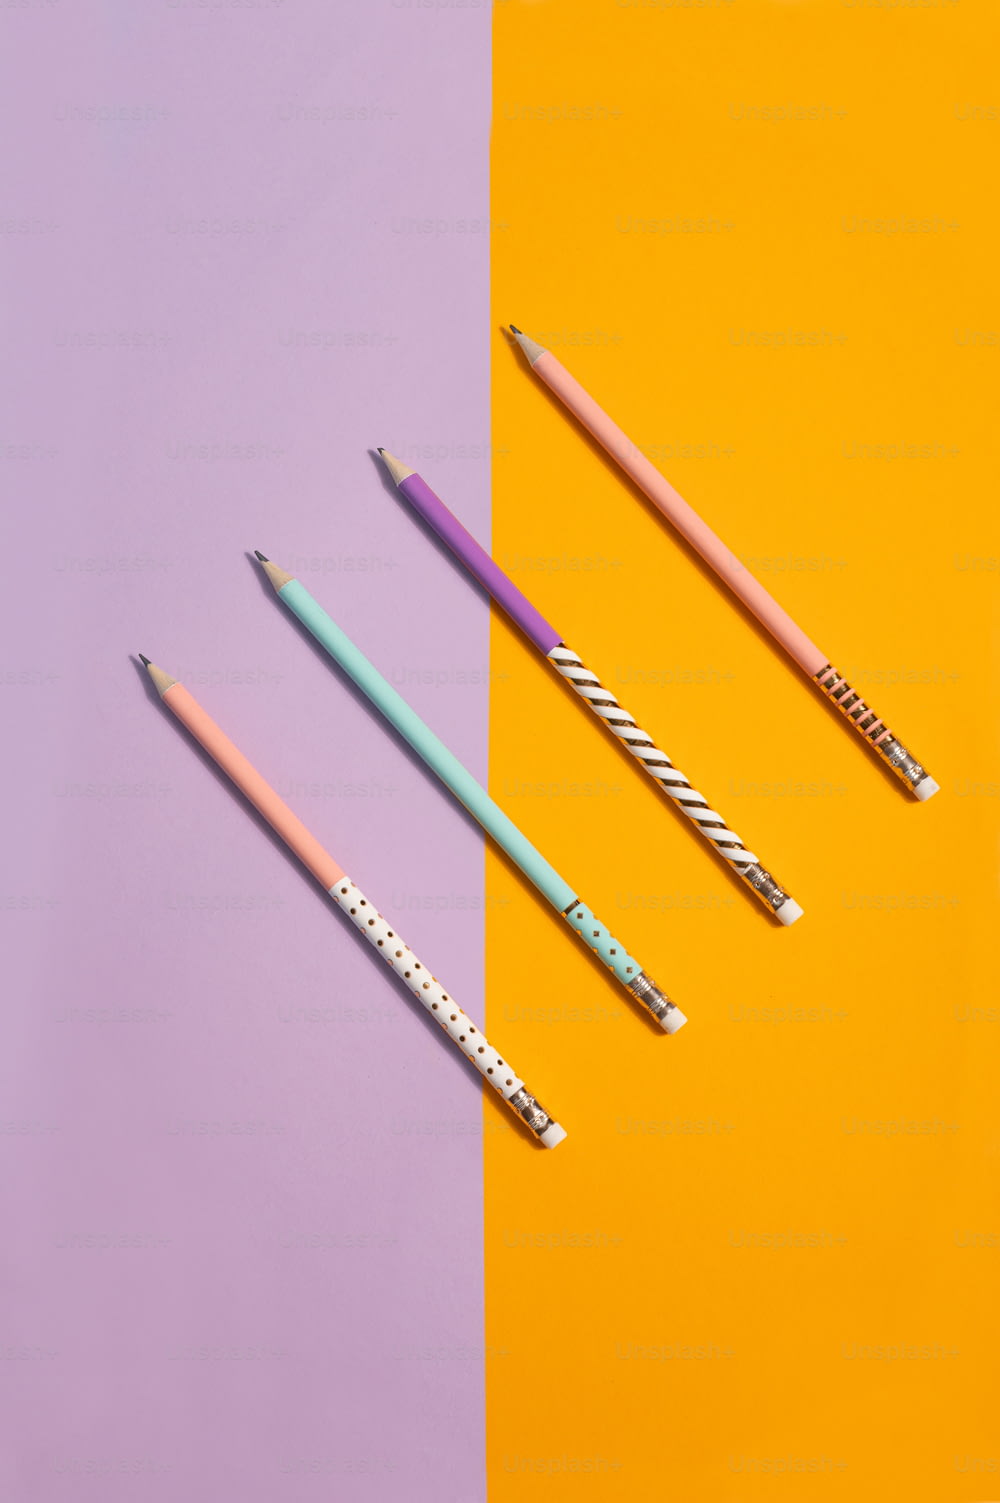 trois crayons de couleurs différentes assis l’un à côté de l’autre